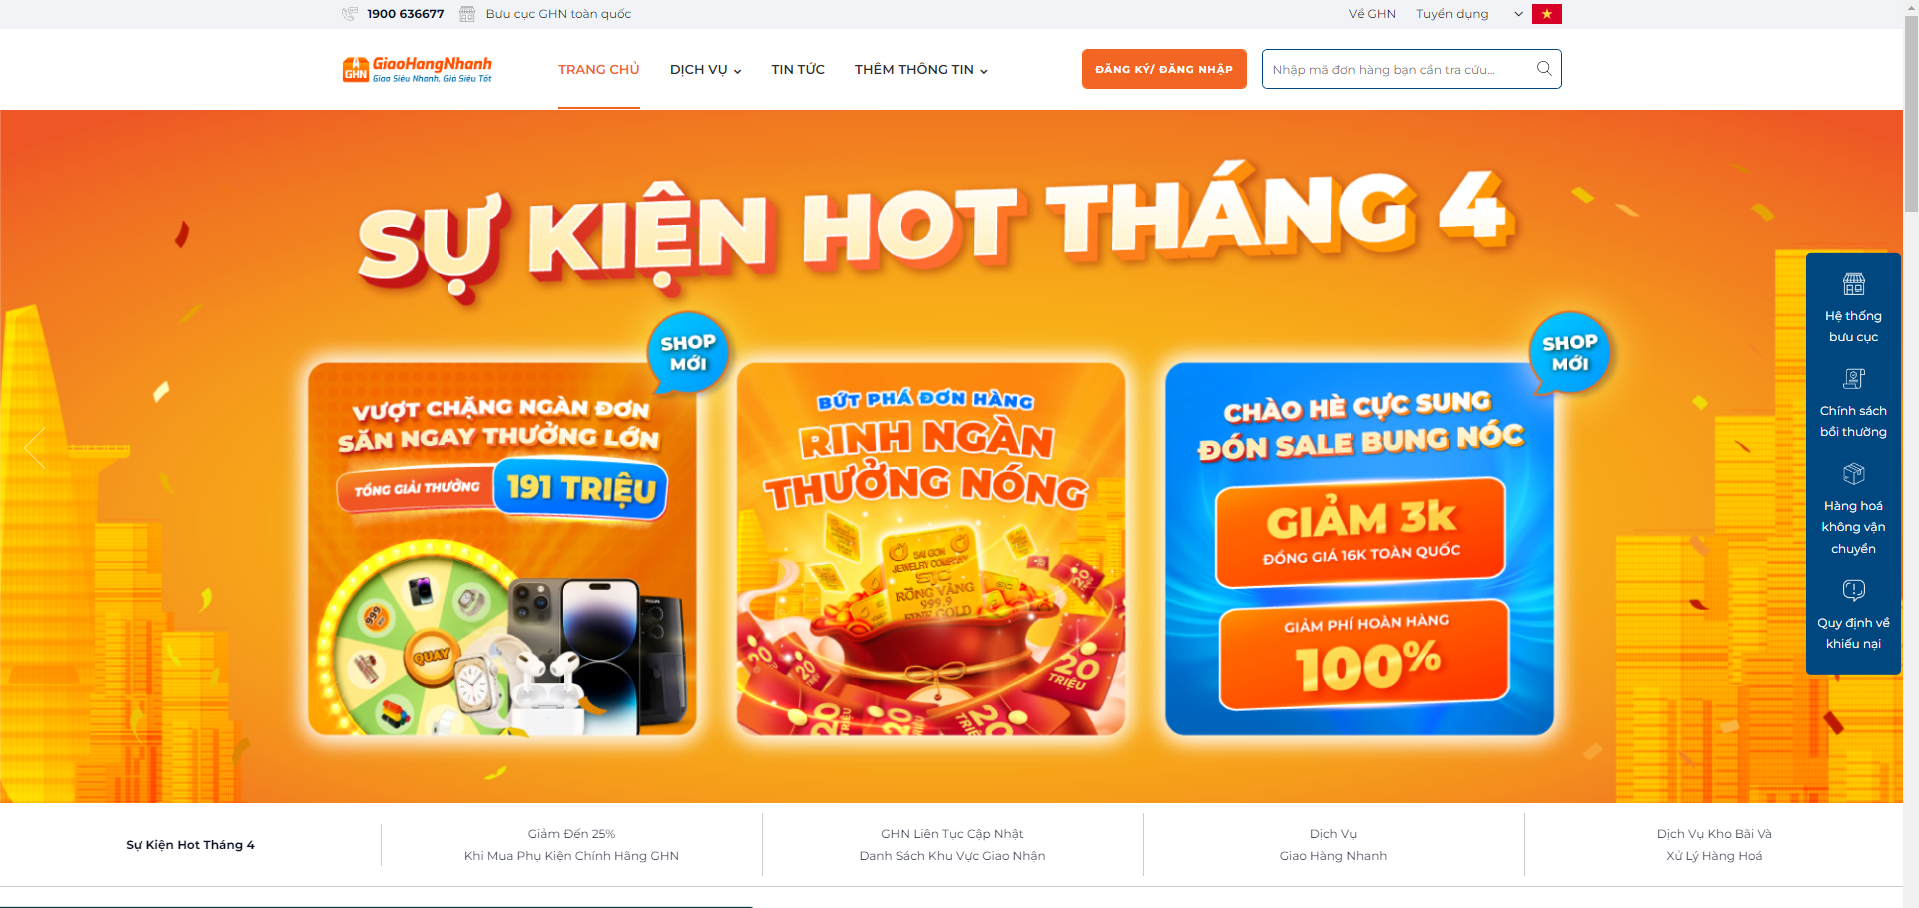 Là công ty giao nhận đầu tiên tại Việt Nam chuyên phục vụ cho các giao dịch online,